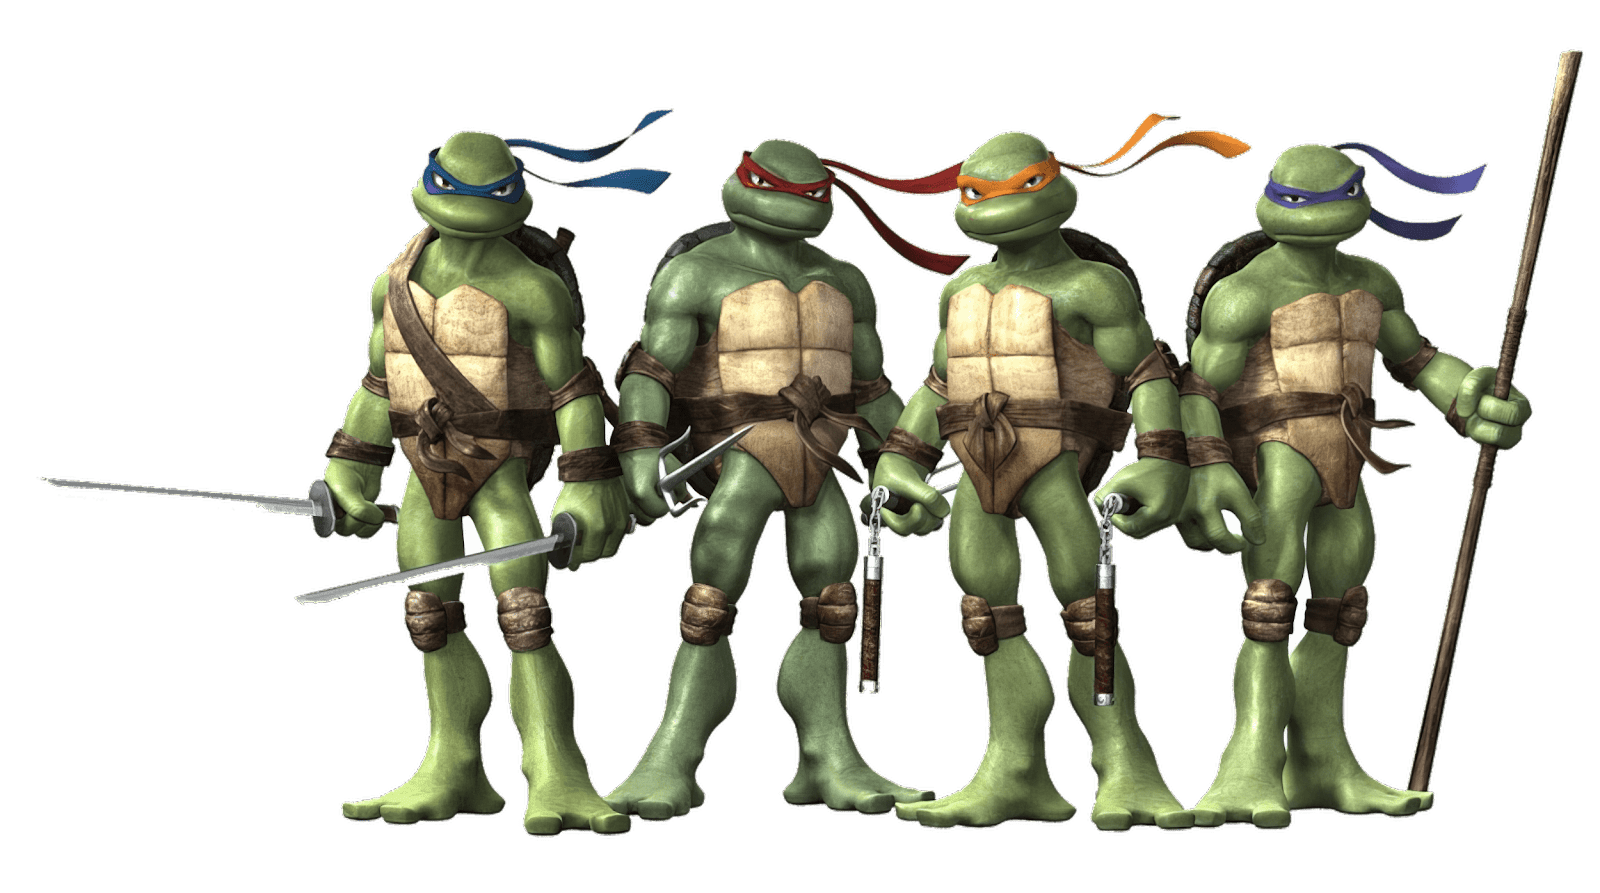 stora bilder av las tortugas ninja med genomskinligt bakgrund i png-format